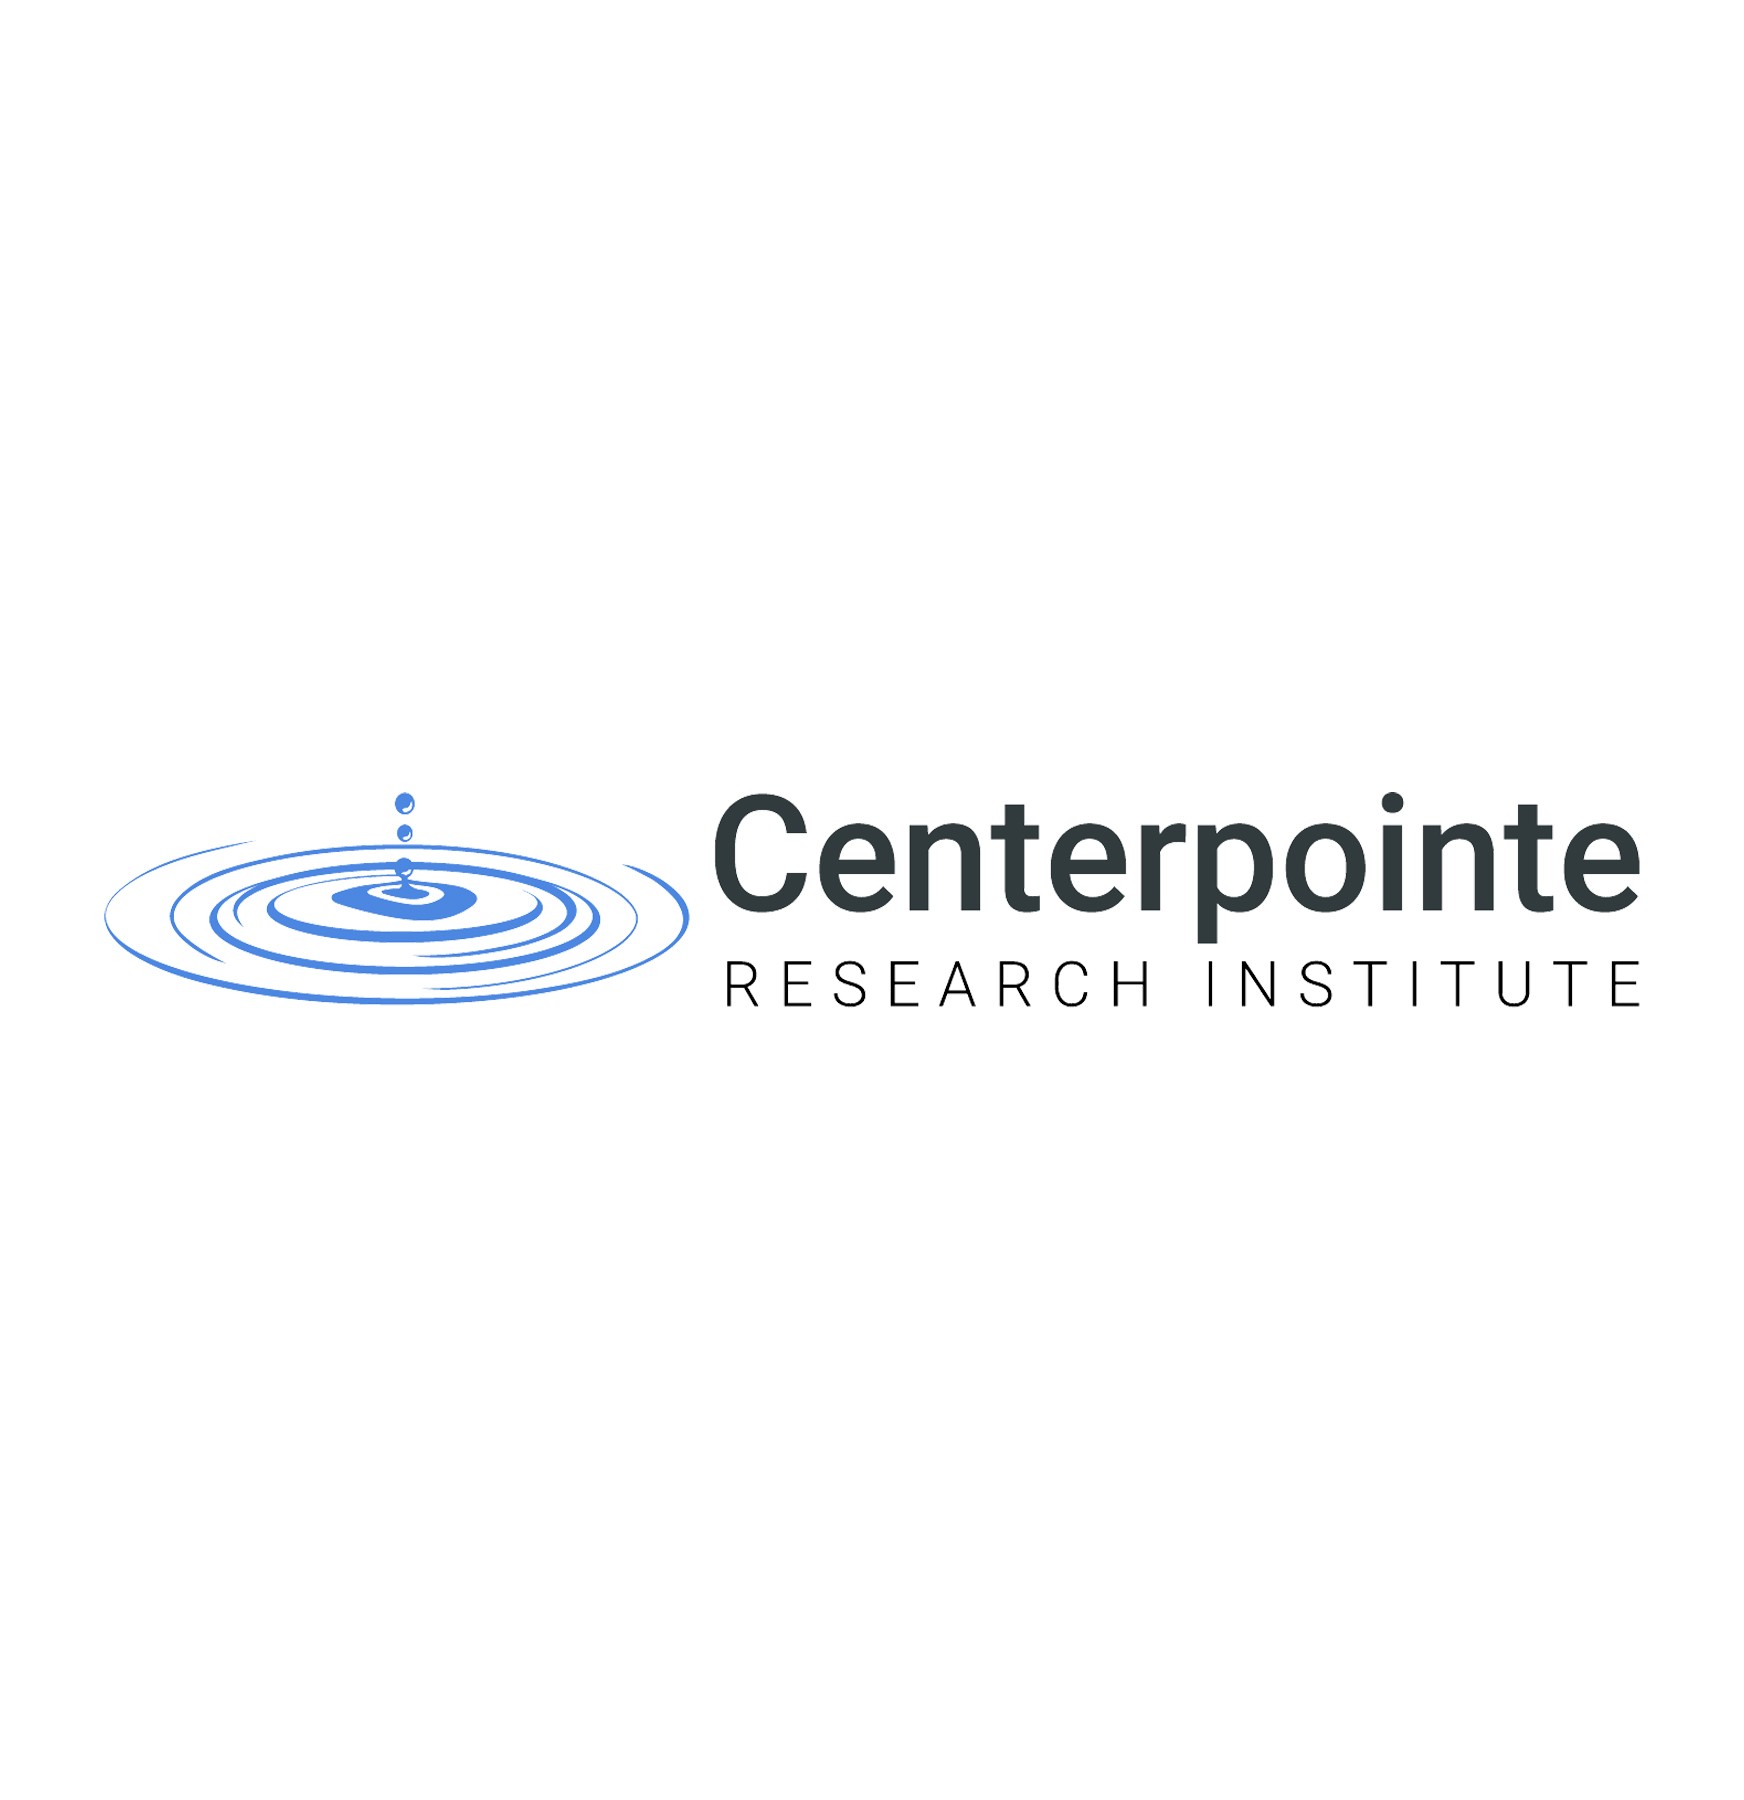 Centerpointe